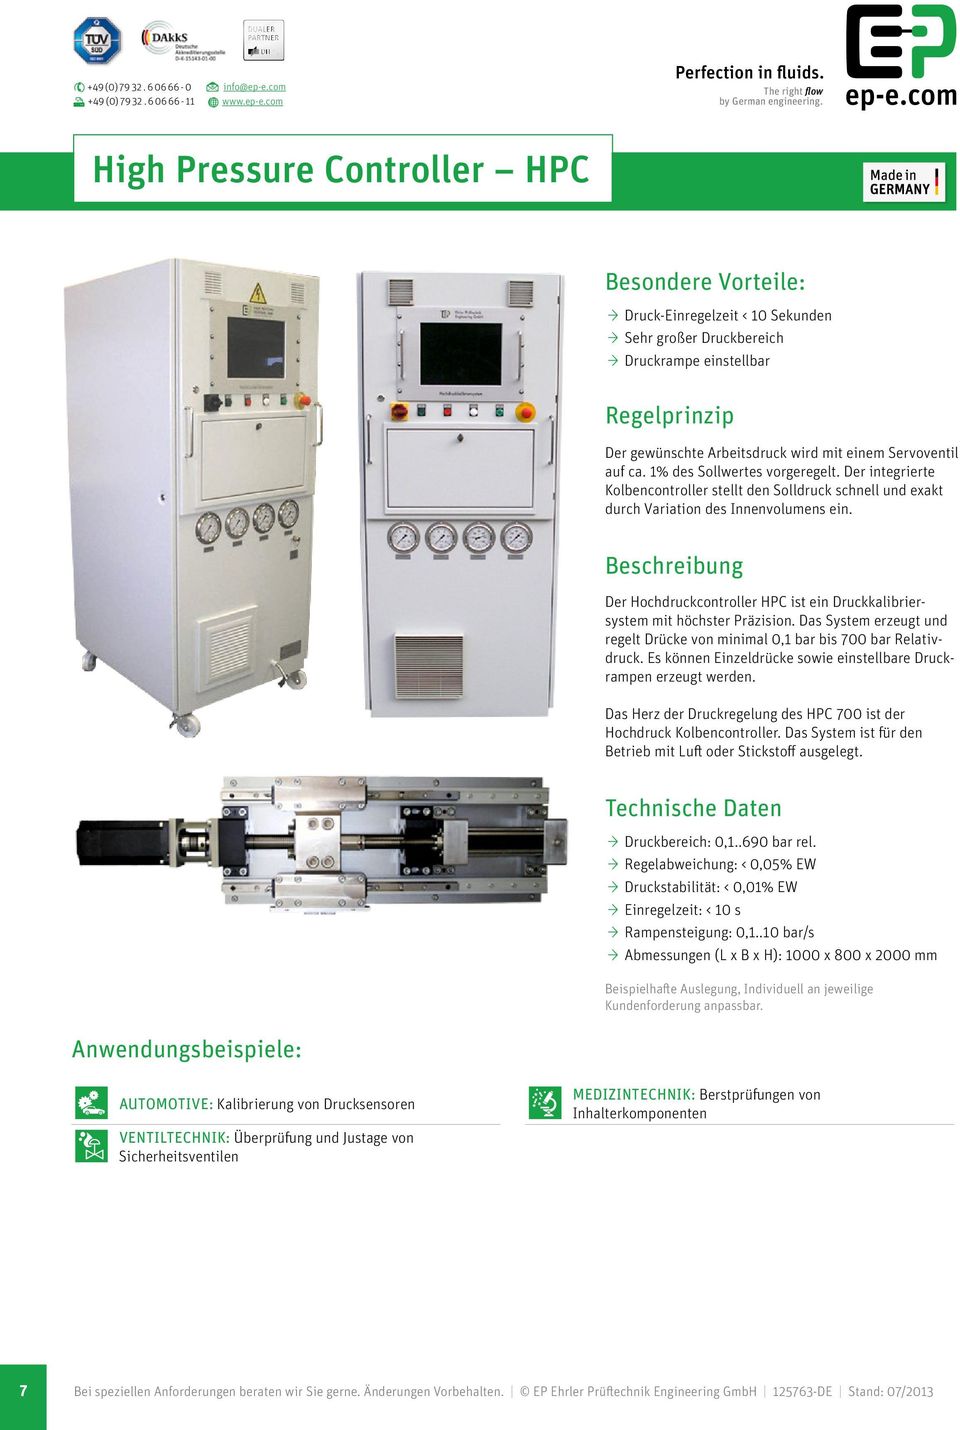 Der Hochdruckcontroller HPC ist ein Druckkalibriersystem mit höchster Präzision. Das System erzeugt und regelt Drücke von minimal 0,1 bar bis 700 bar Relativdruck.